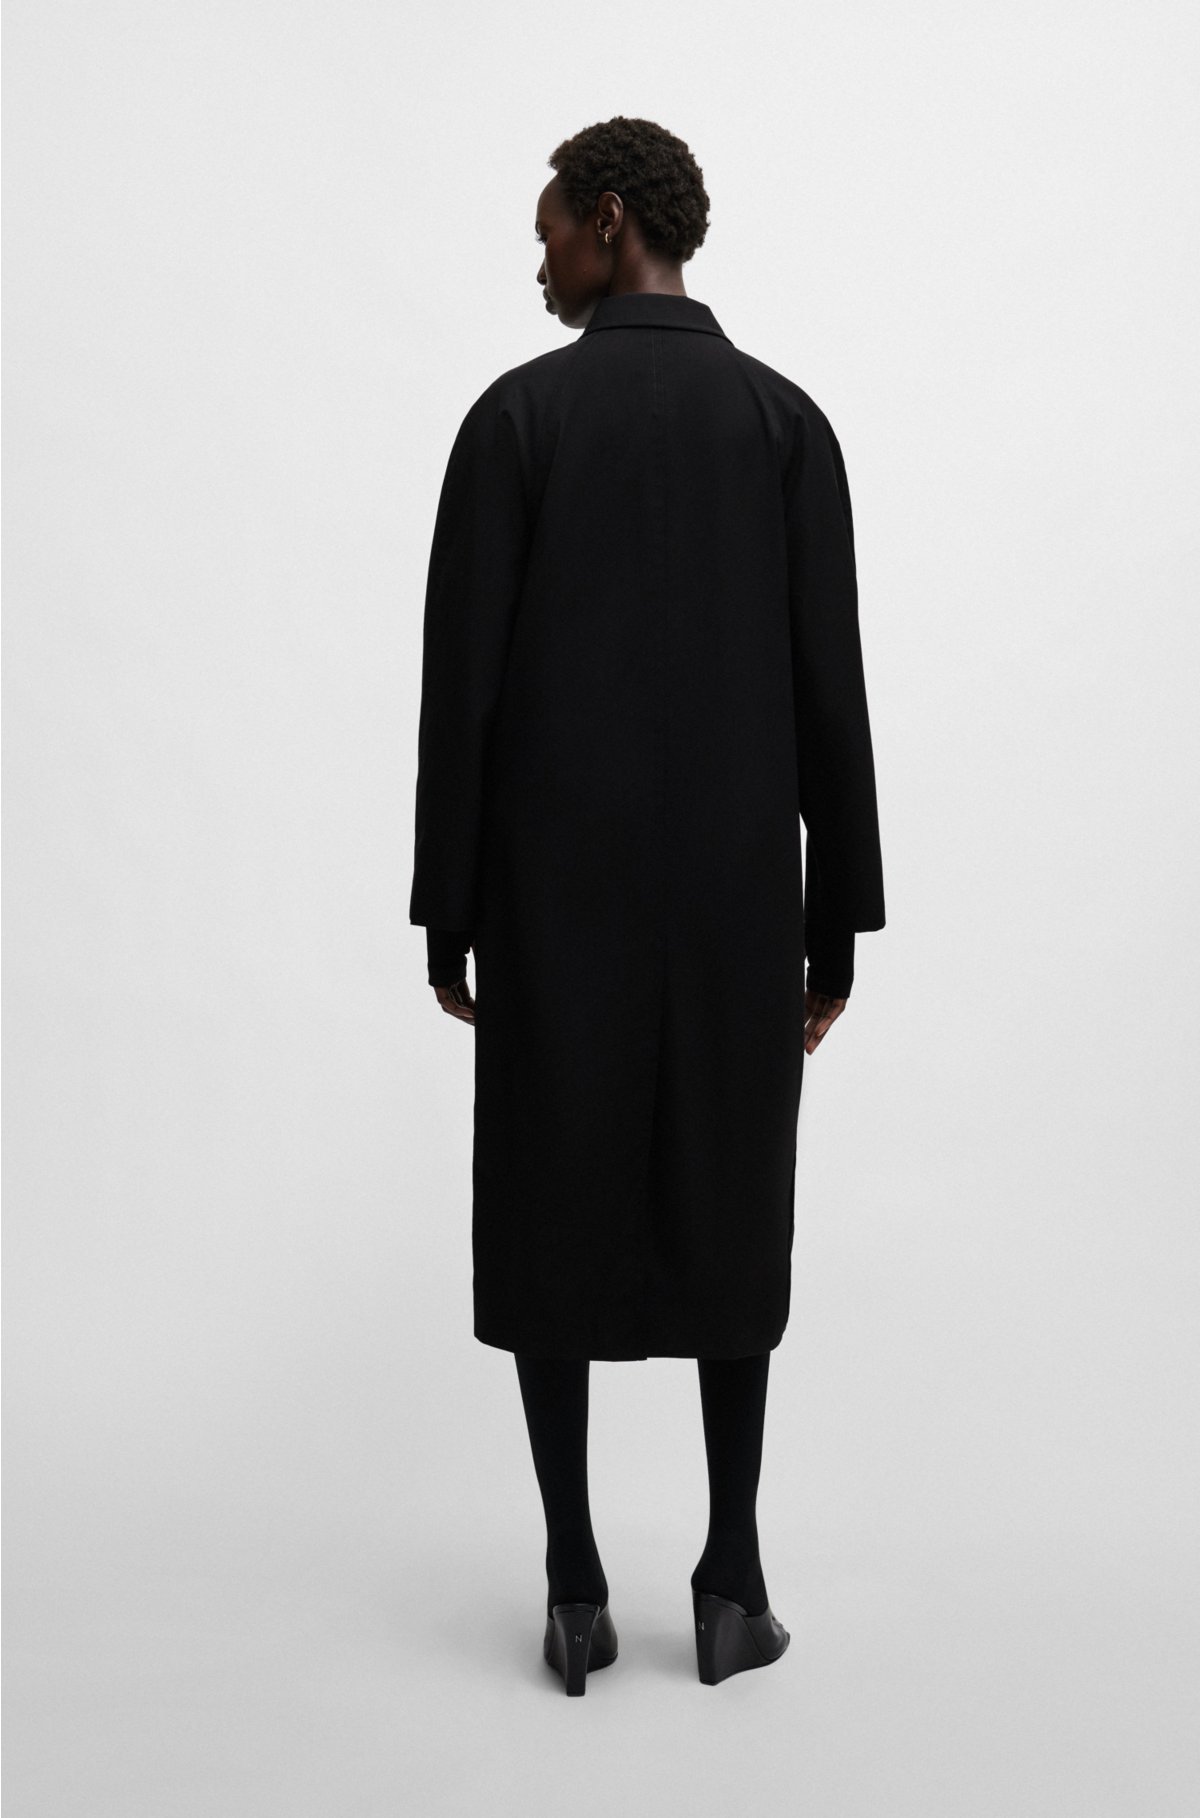 NAOMI x BOSS water-repellent coat in virgin wool, Black